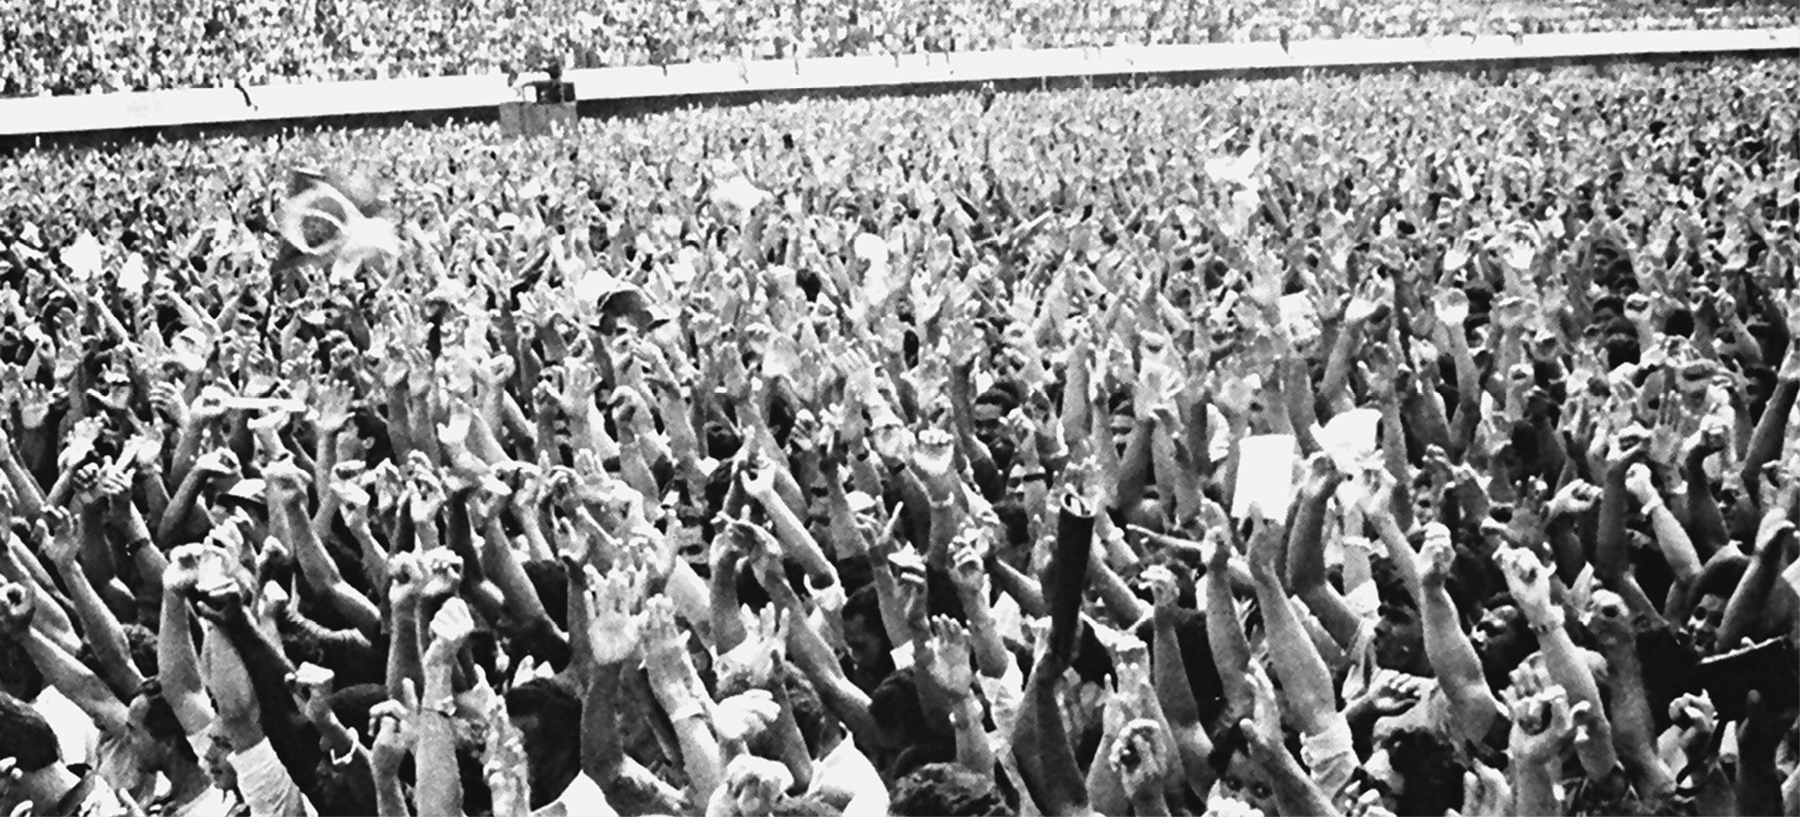 Fotografia em preto e branco. Multidão reunida. Todos estão com os braços levantados.